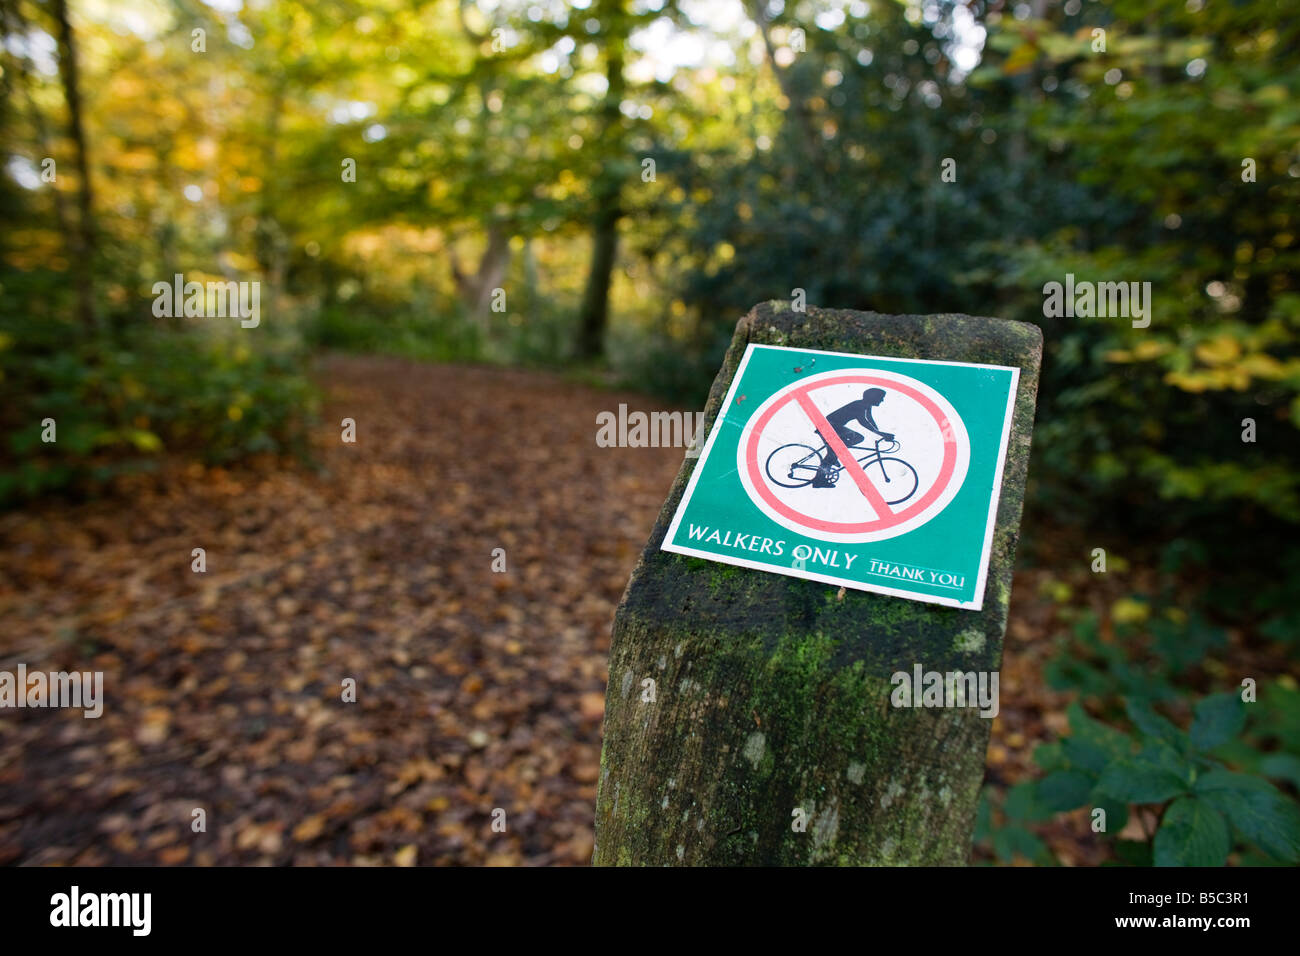 Herbst an der City of London besaß Burnham Beeches in Buckinghamshire. Radfahren verboten Schild am Weg. Stockfoto